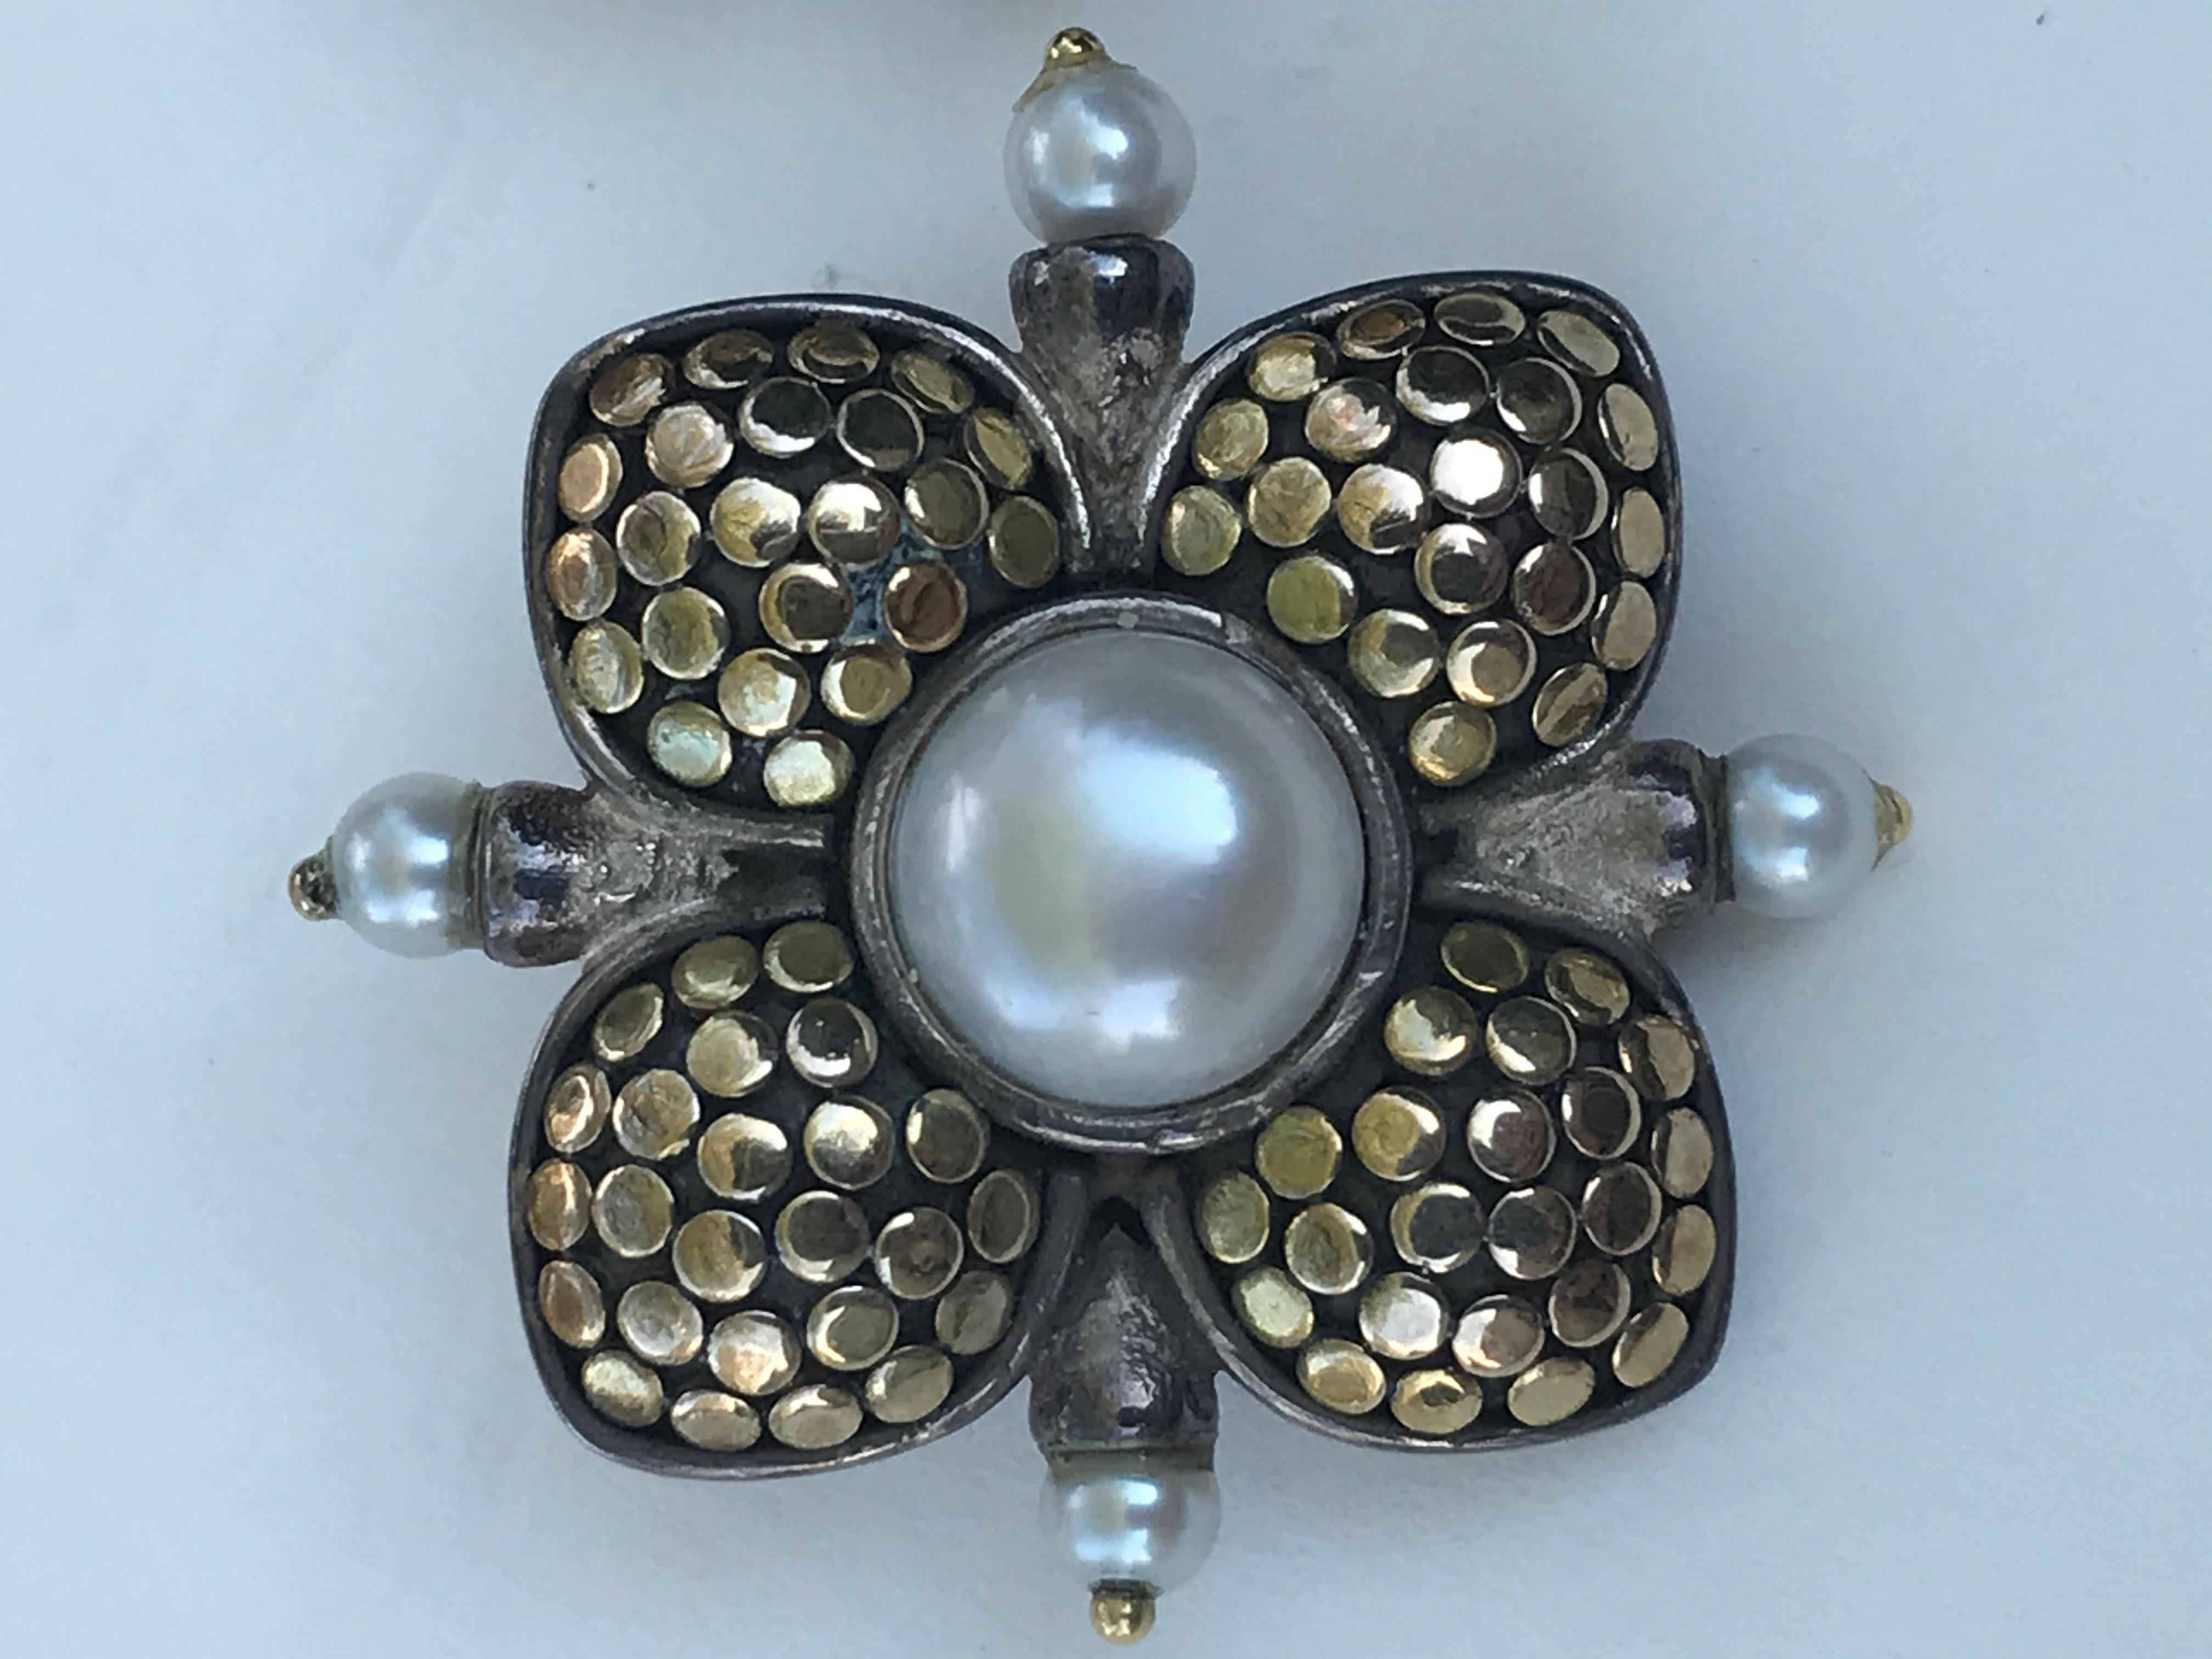 Ces magnifiques boucles d'oreilles en perles de John Hardy sont une addition géniale à toute boîte à bijoux.
John Hardy
Argent sterling avec accents en or jaune 18 carats en forme de fleur
10 perles au total
2 perles mabe centrales d'environ 8 mm de